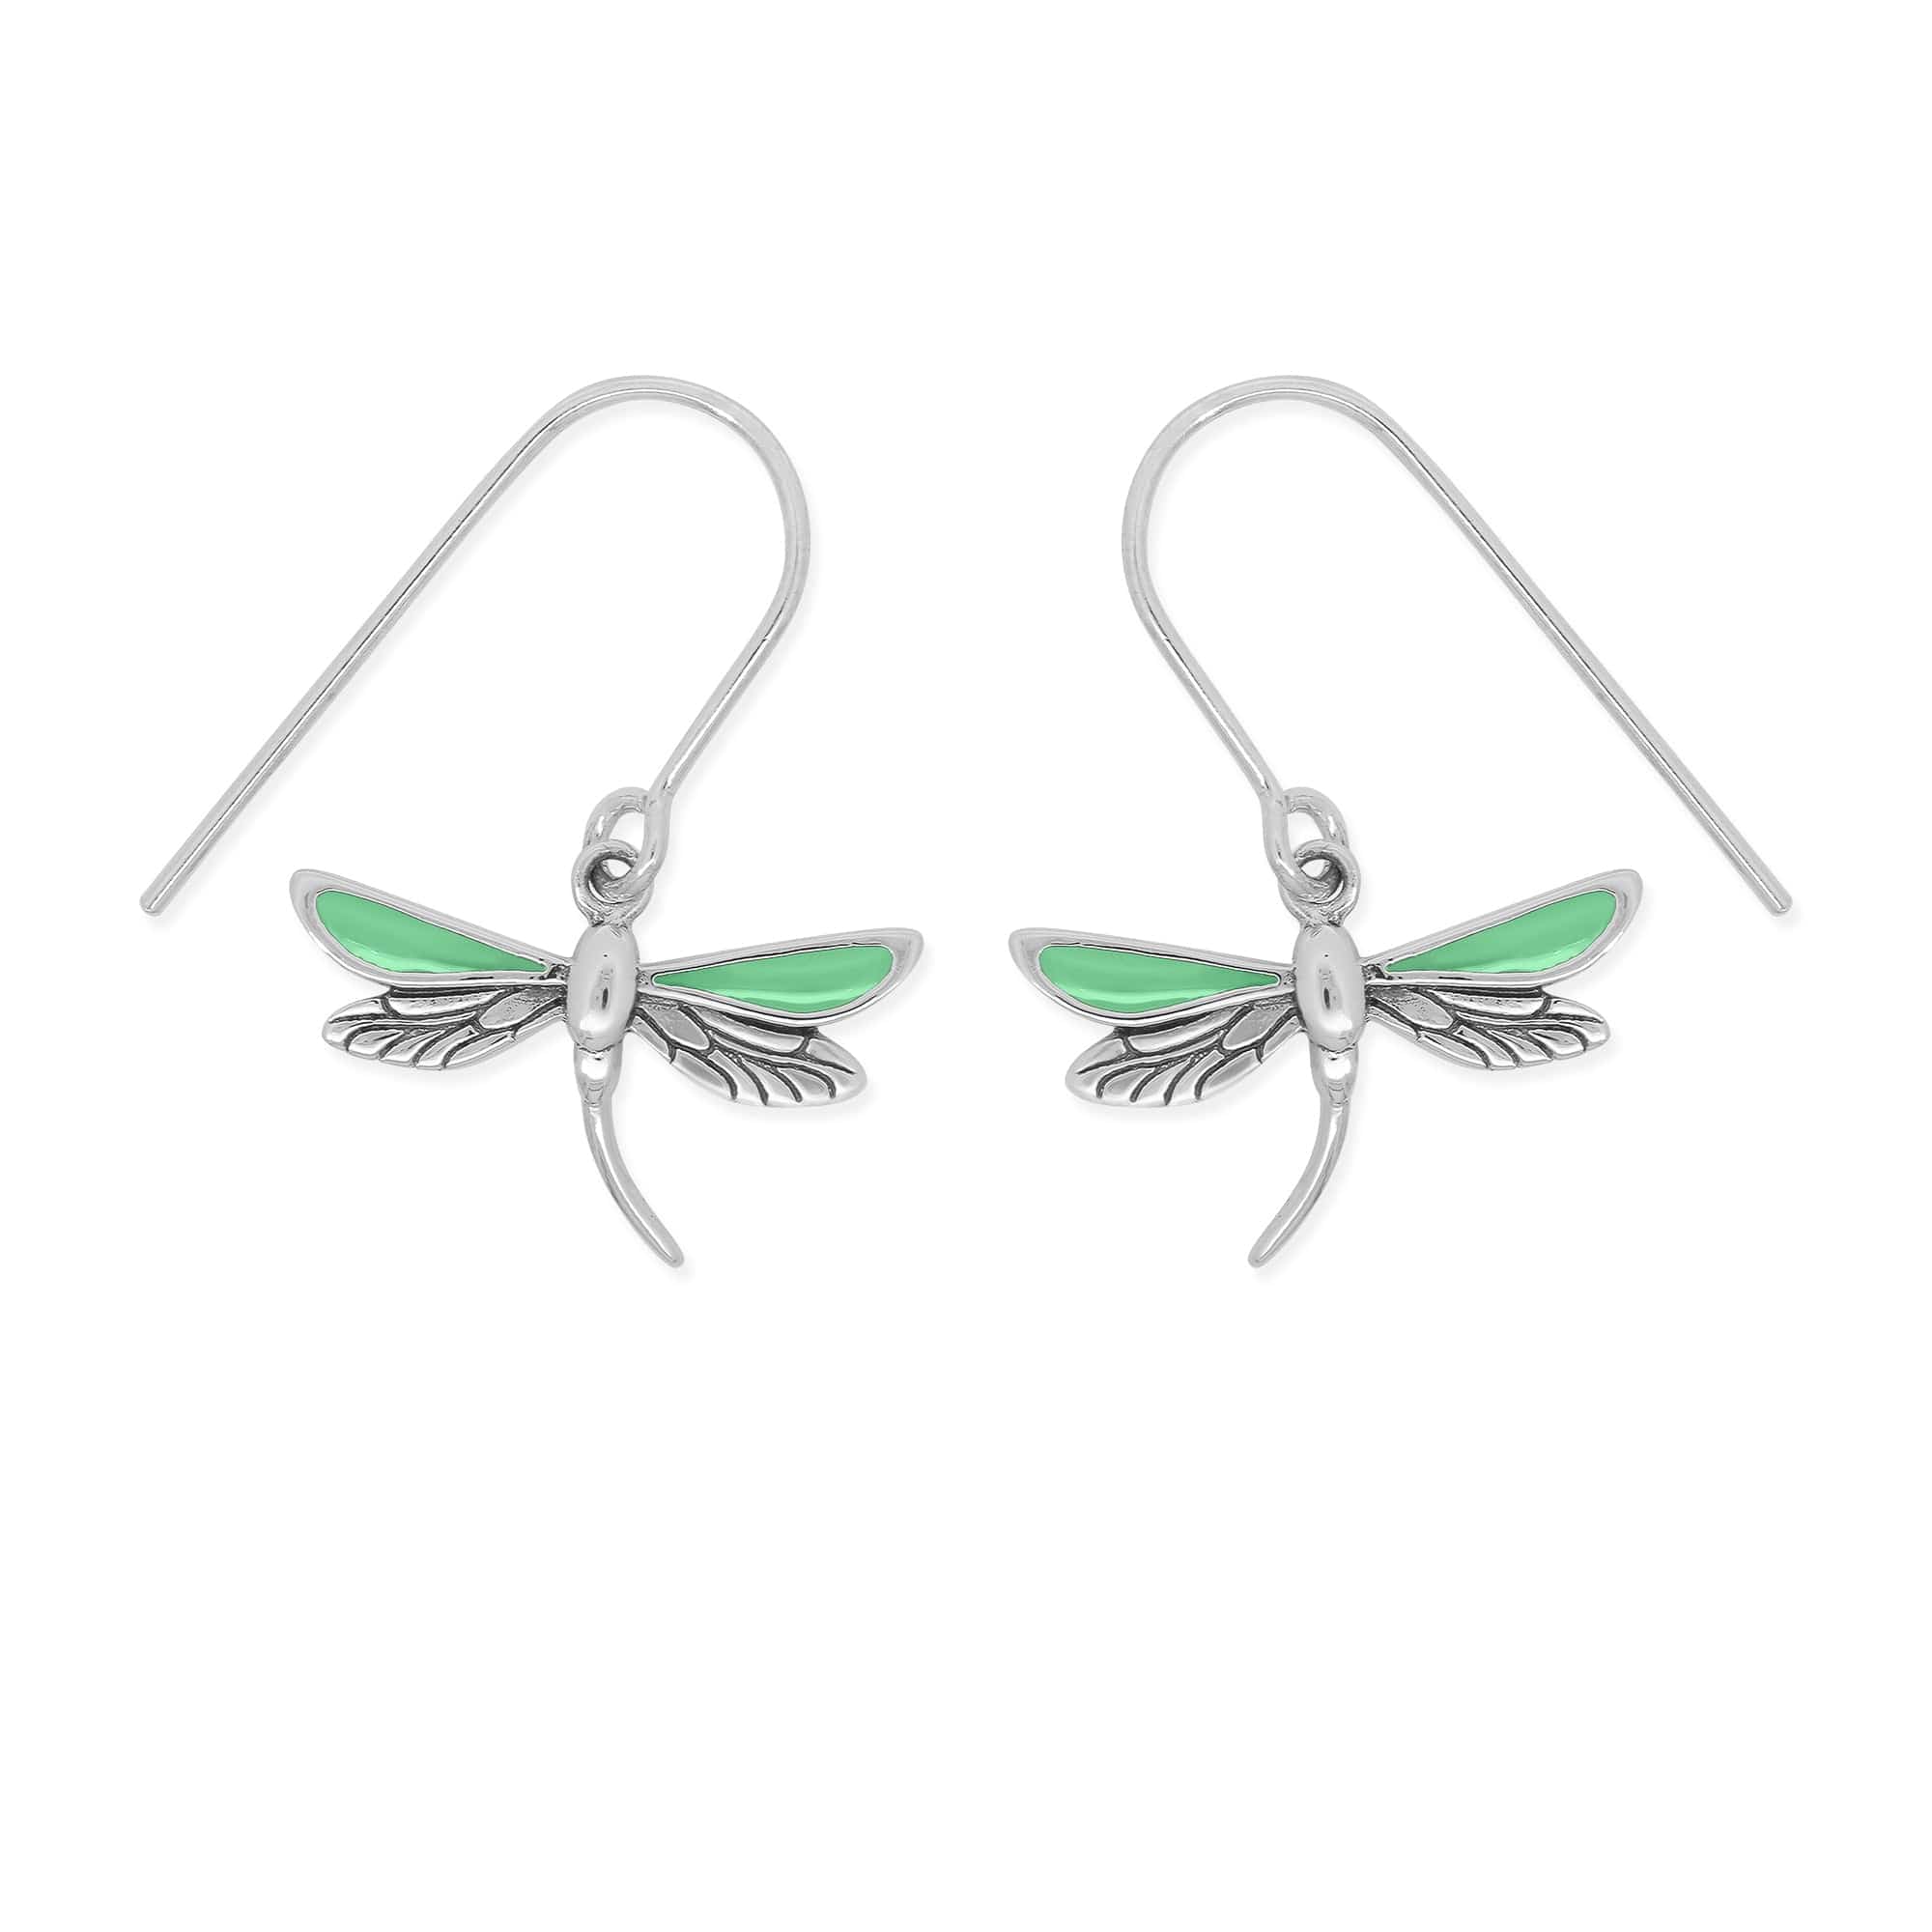 Boma Jewelry Earrings Green Dragonfly Dangle Earrings with Enamel